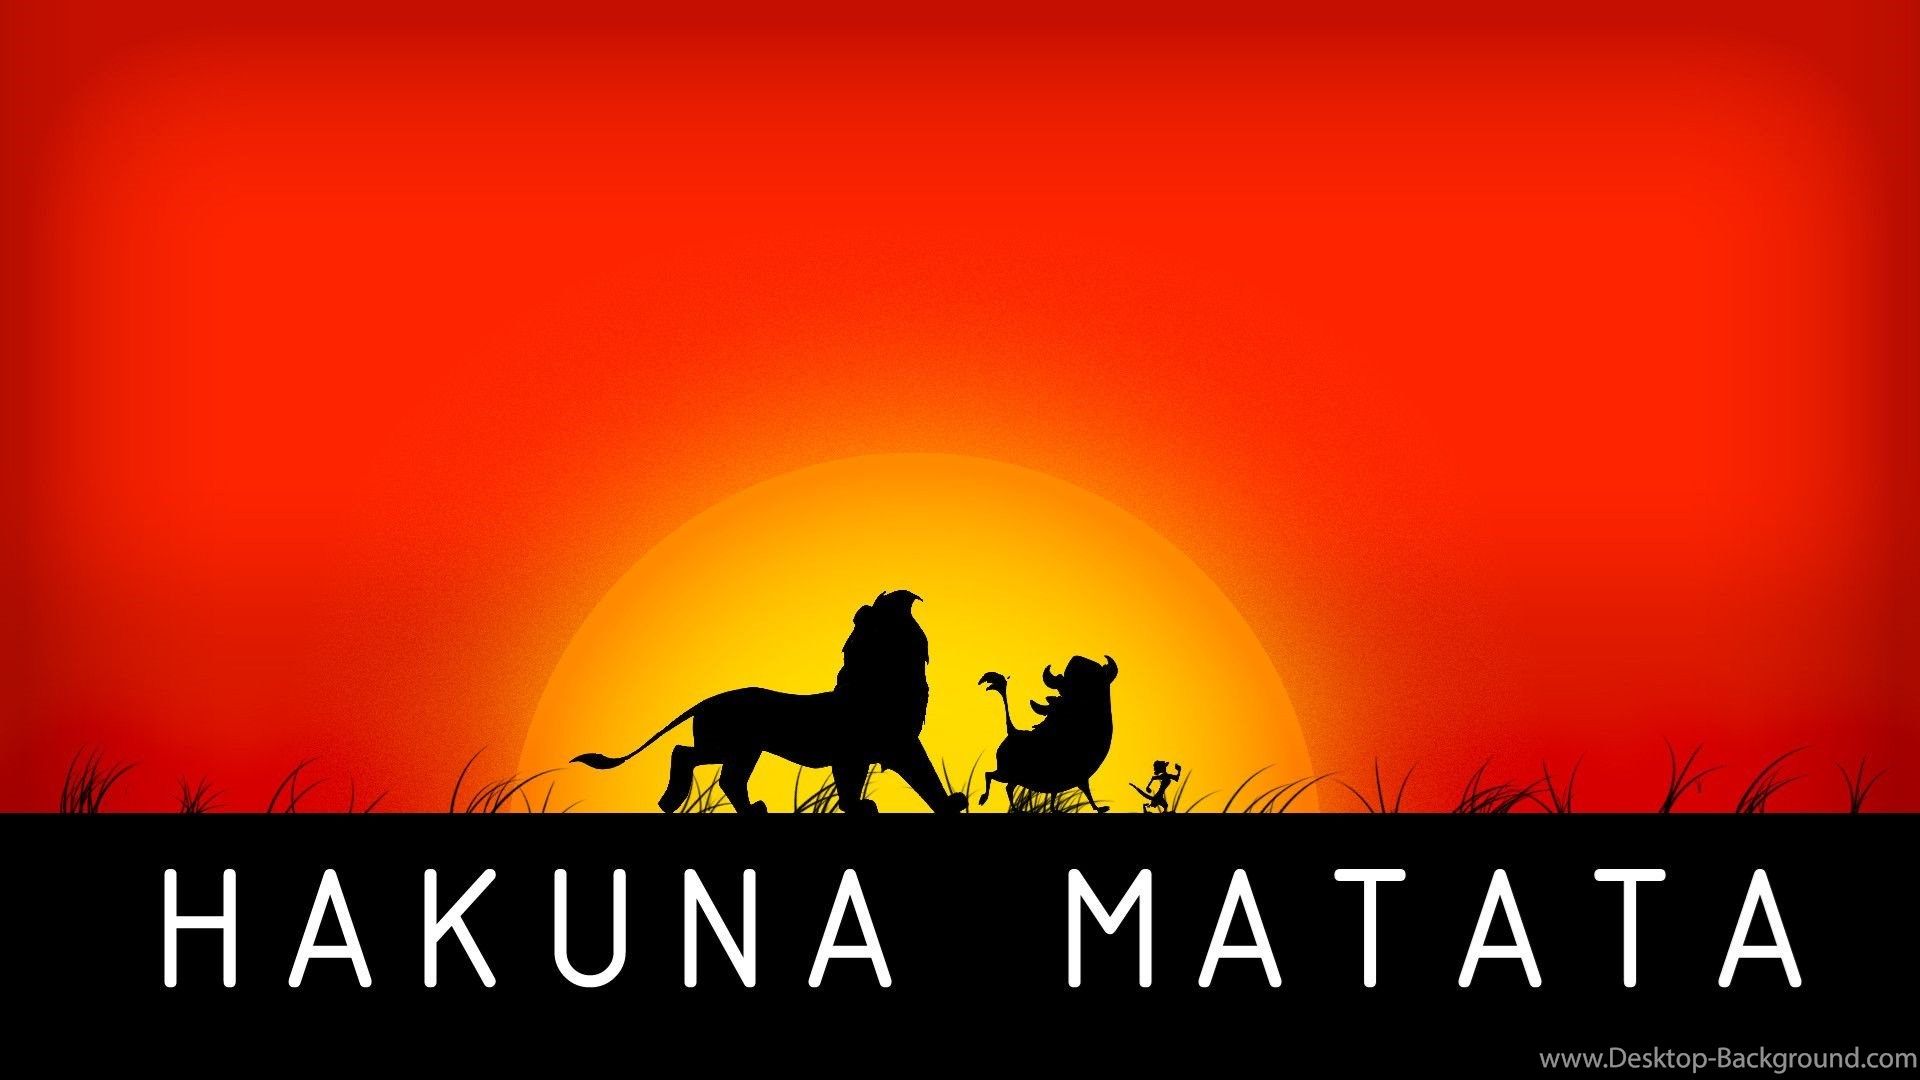 Hakuna Matata Wallpaper. Hakuna Matata Infinity Wallpaper, Hakuna Matata Wallpaper and The Lion King Hakuna Matata Wallpaper